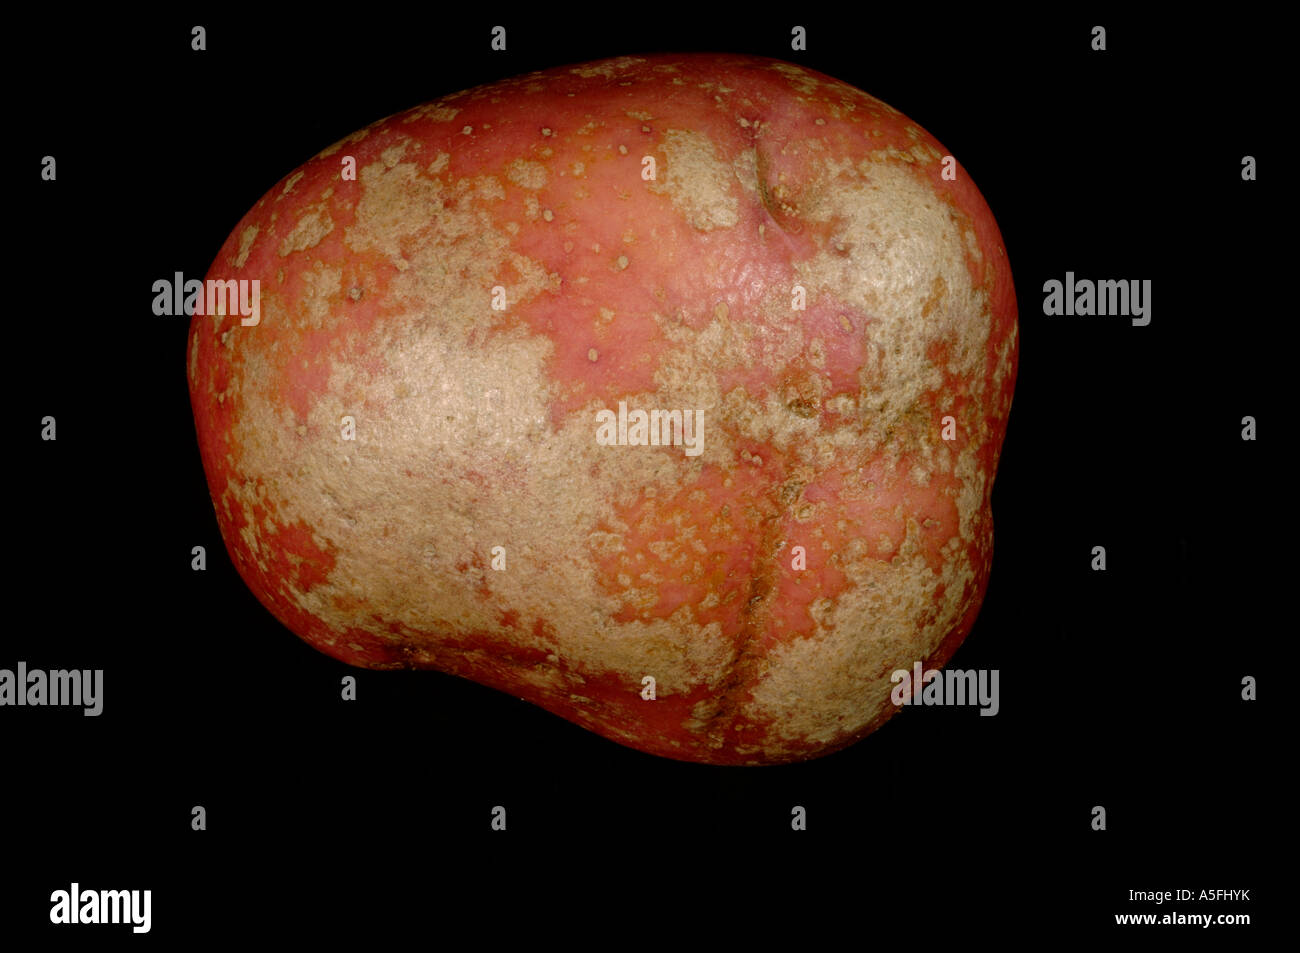 Silver scurf Helminthosporium solani on red Desiree potato tuber skin Stock Photo